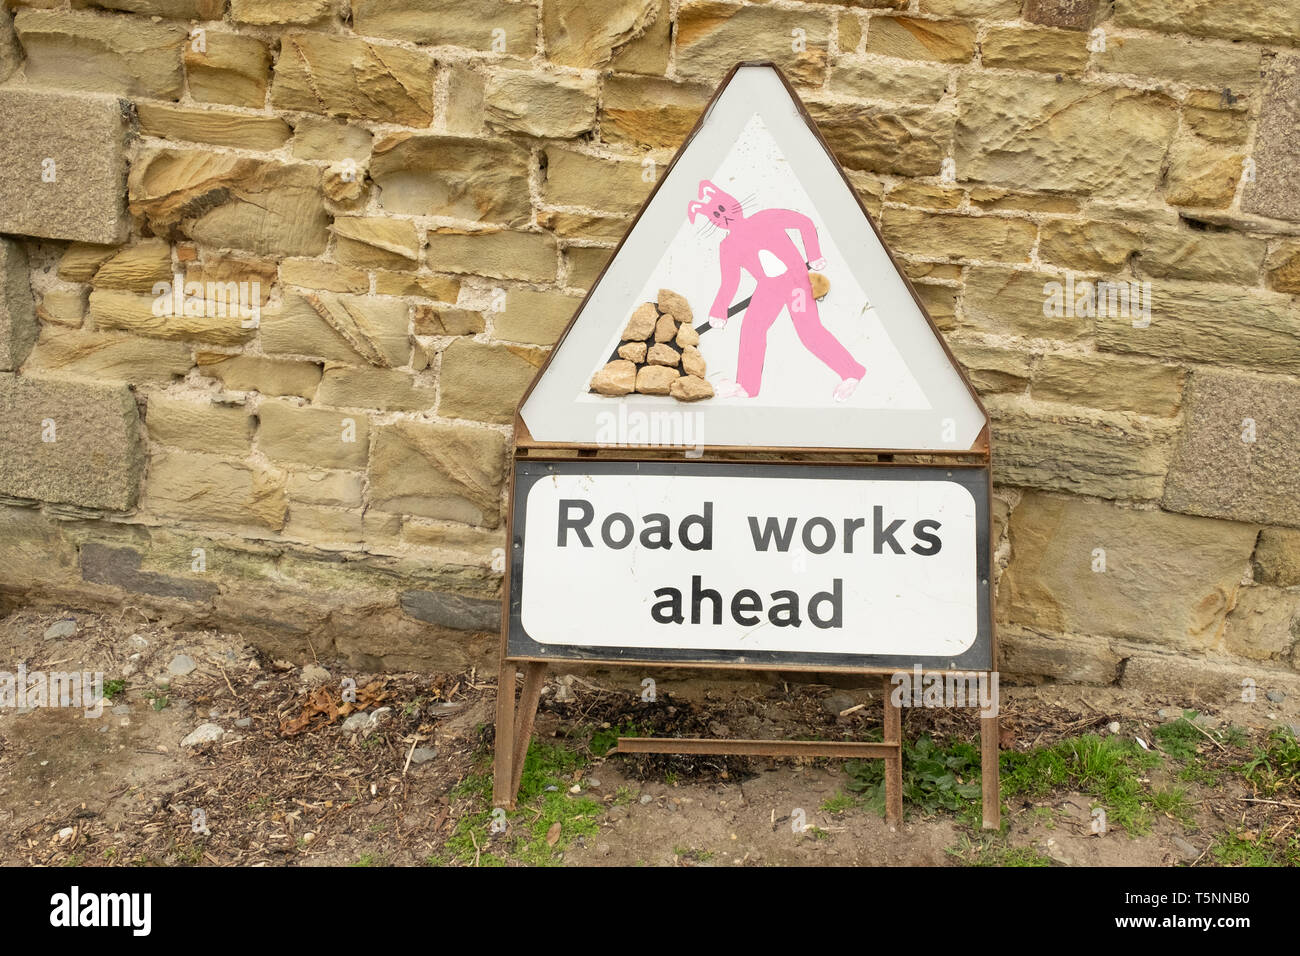 Alterato roadworks segno con coniglio rosa figura, in Cornovaglia, Inghilterra Foto Stock